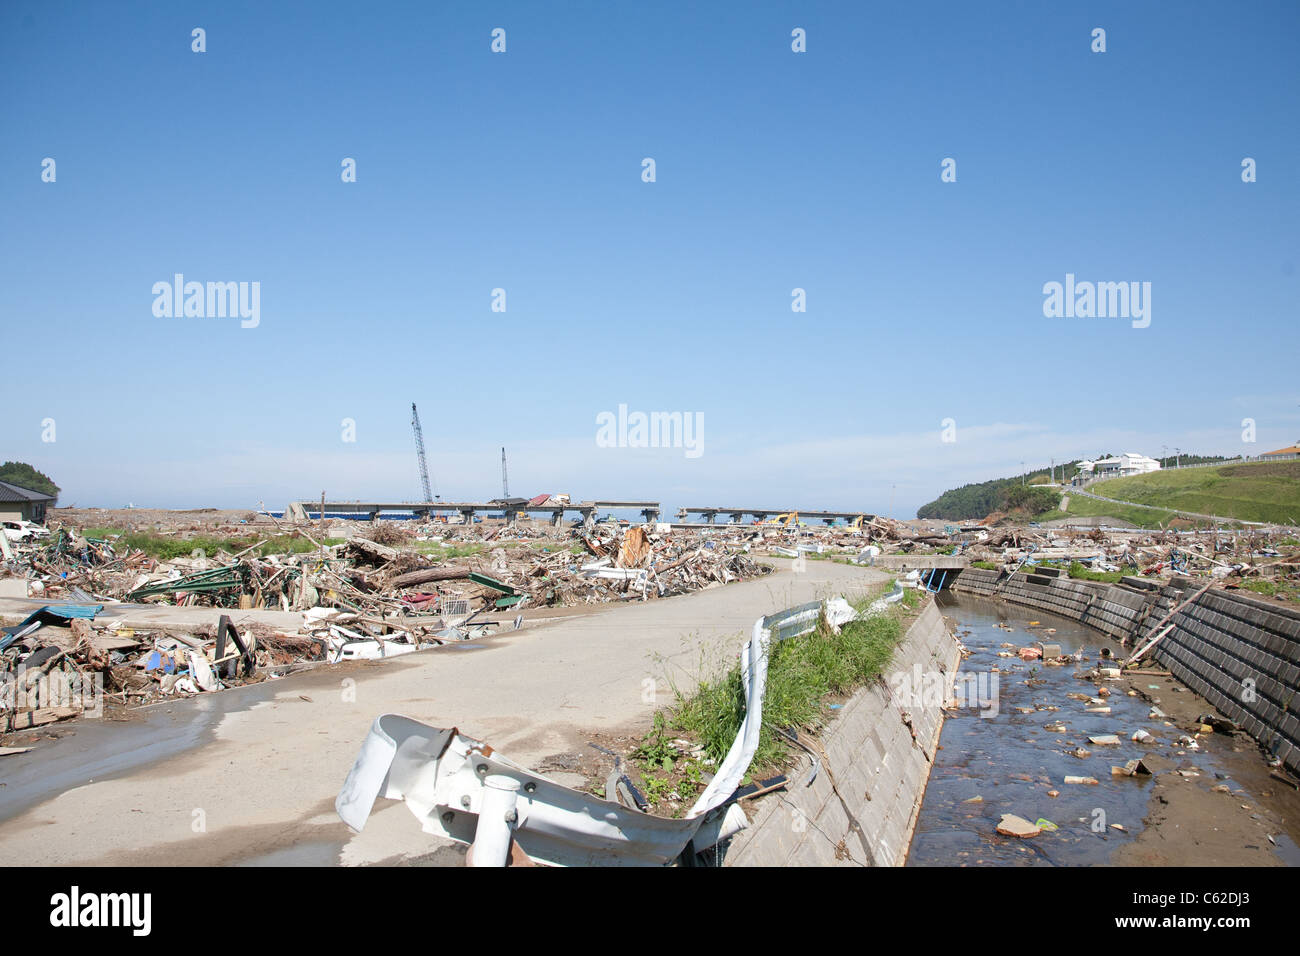 Ein Bahngleis wird zerstört und die Dächer der Häuser sitzen an der Spitze mit einem Fluss im Vordergrund mit Müll übersät ist. Stockfoto